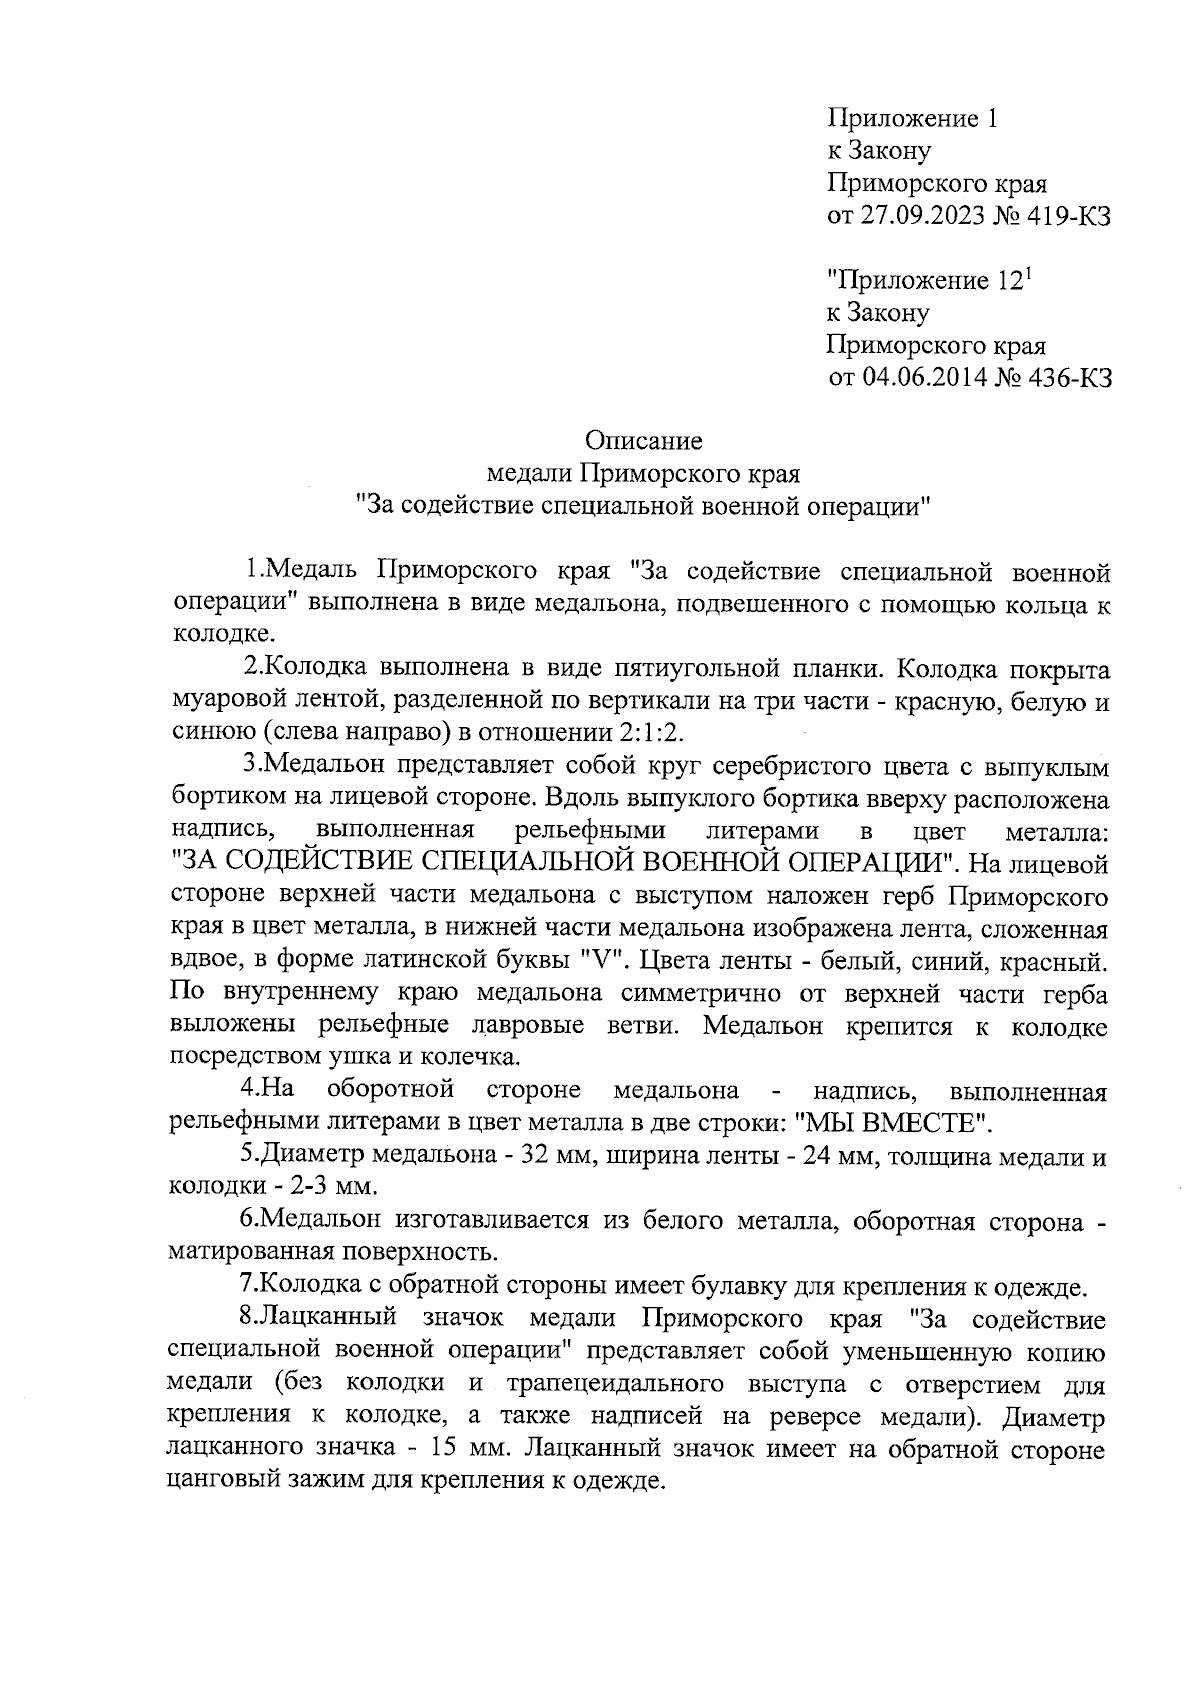 Закон Приморского края от 27.09.2023 № 419-КЗ ∙ Официальное опубликование  правовых актов